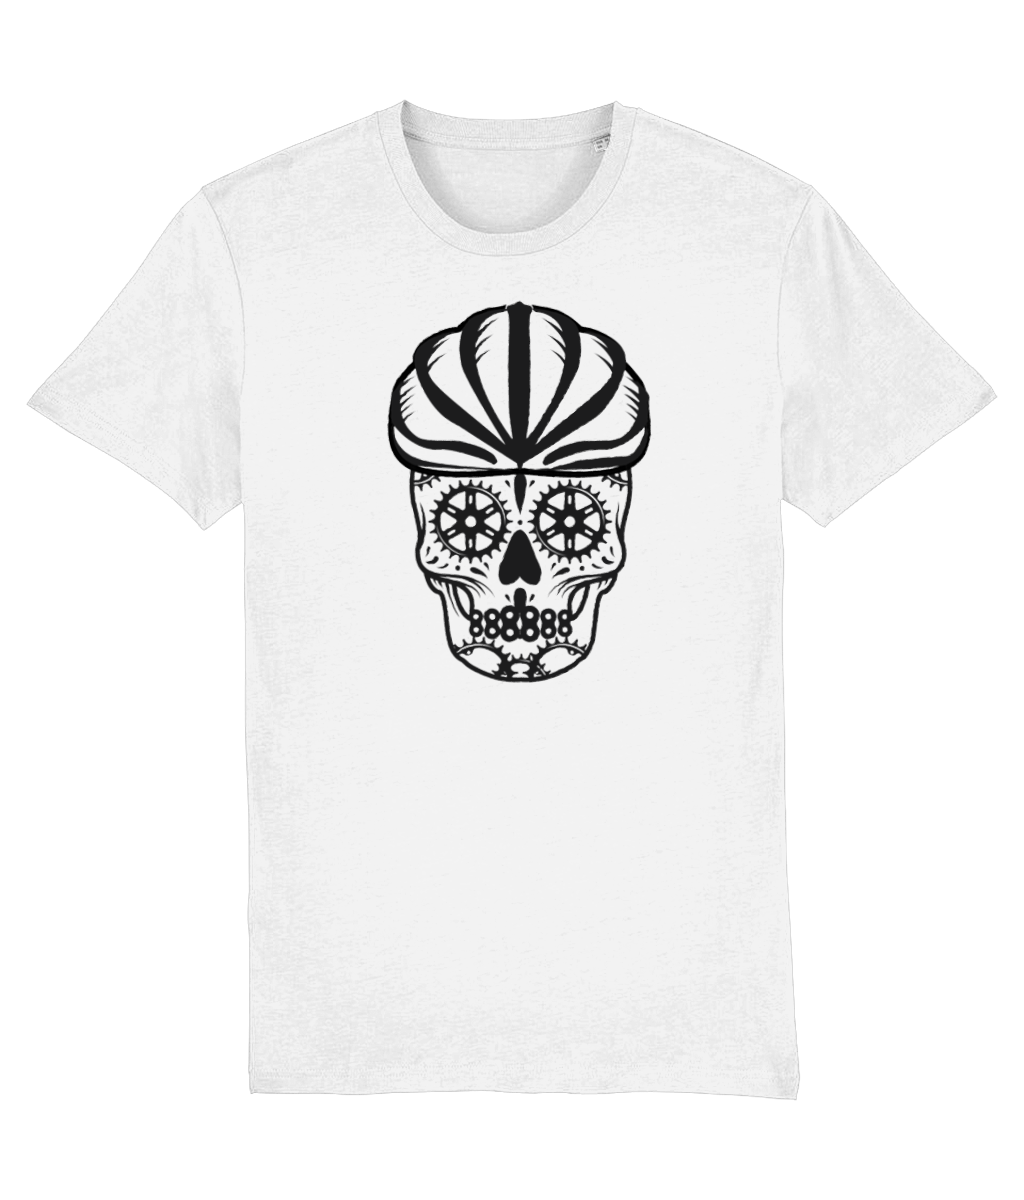 Cyclist B&W Sugar Skull T-Shirt